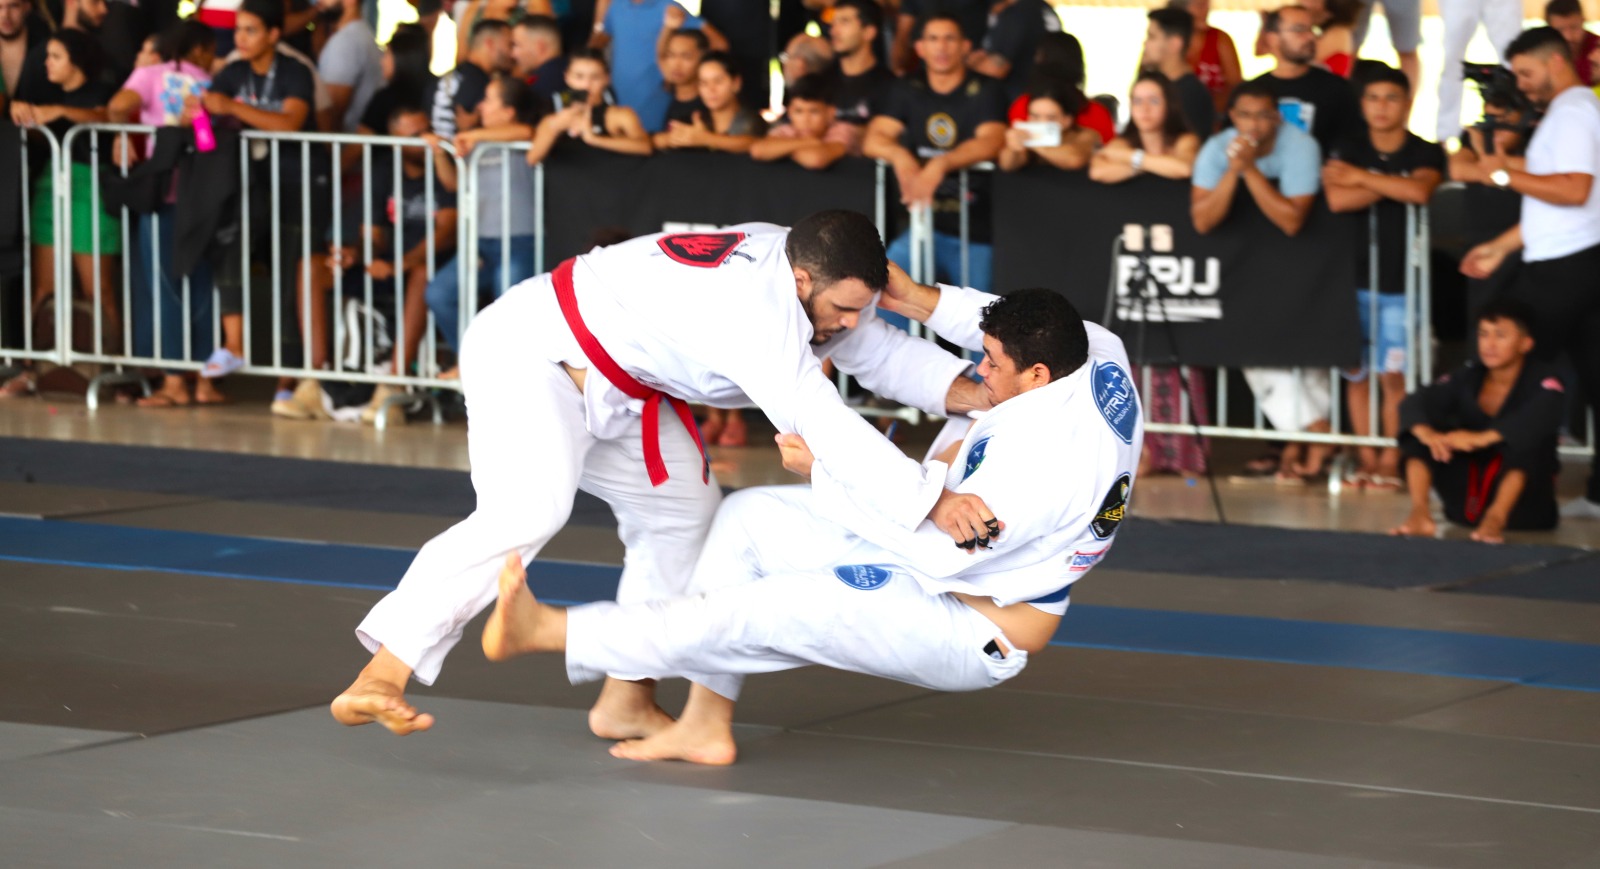 O campeonato internacional de jiu-jítsu realizado em Araguaína repercutiu mundo afora e foi transmitido, ao vivo, para mais de 40 países